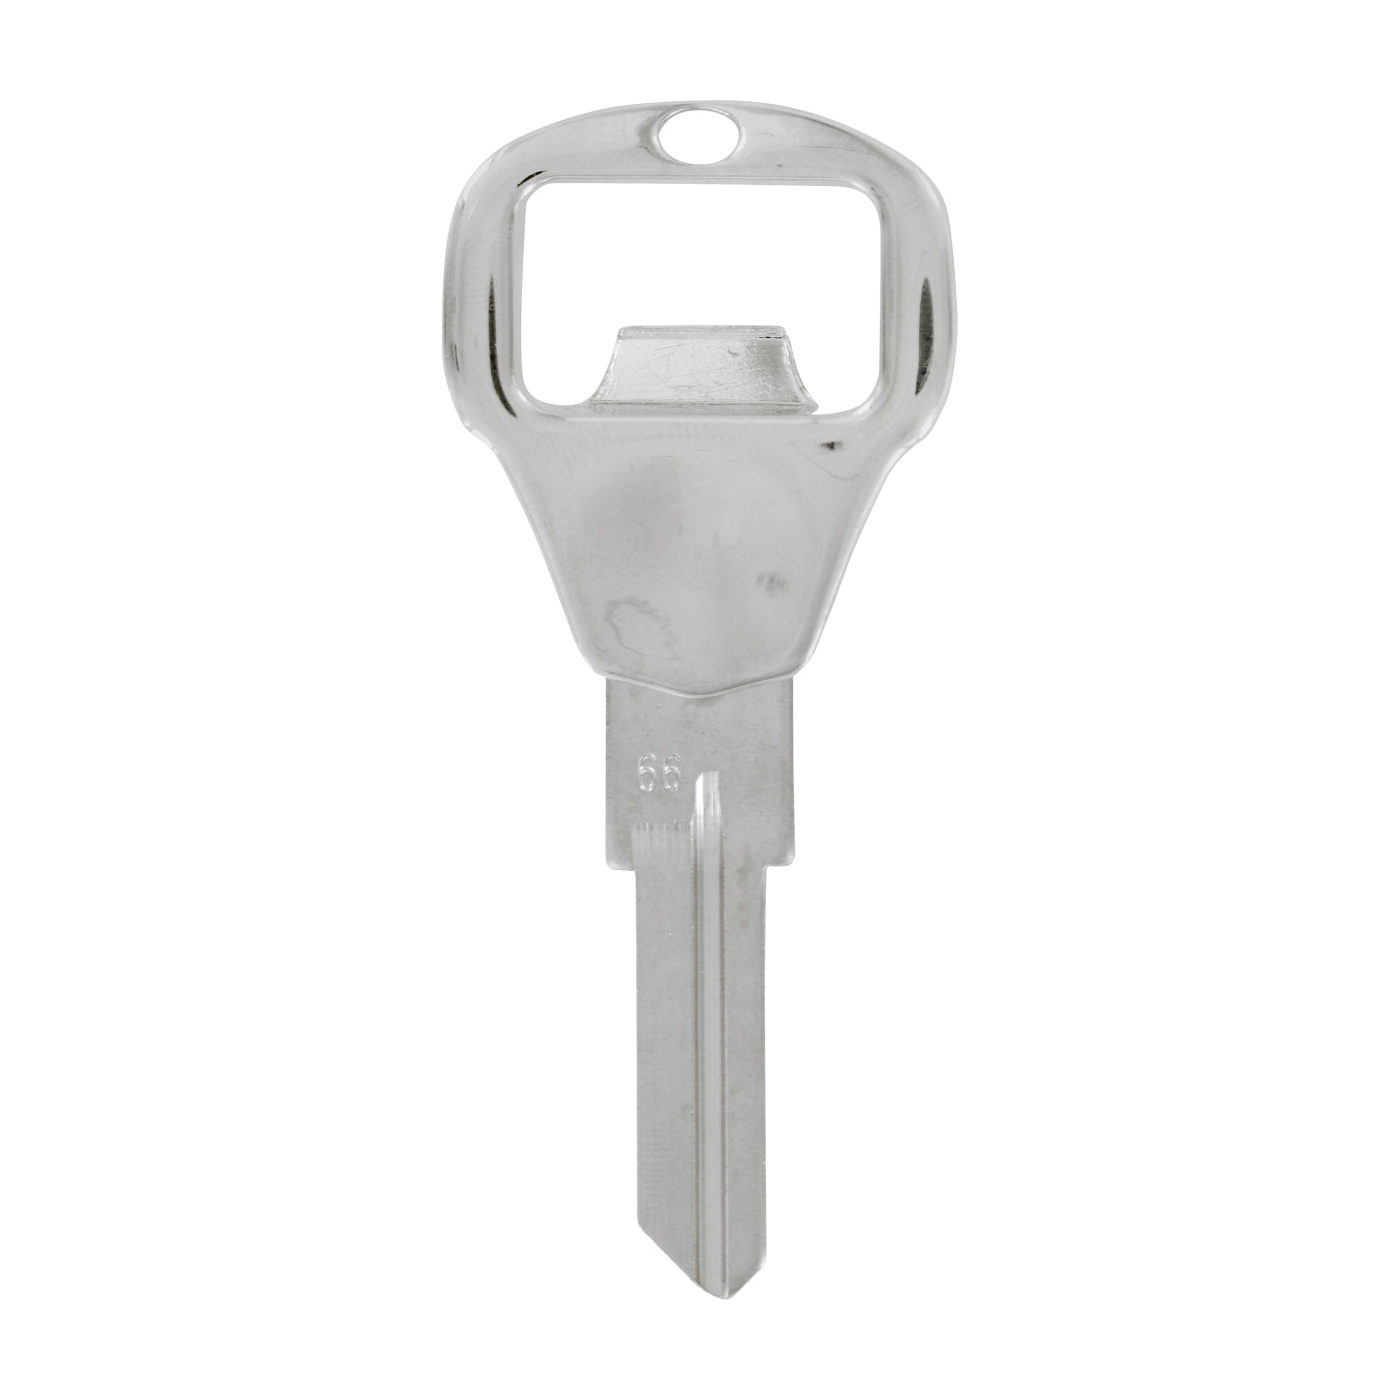 87062 Bottle Opener Key, Metal, Chrome-Plated, For: Kwikset Brand Locks